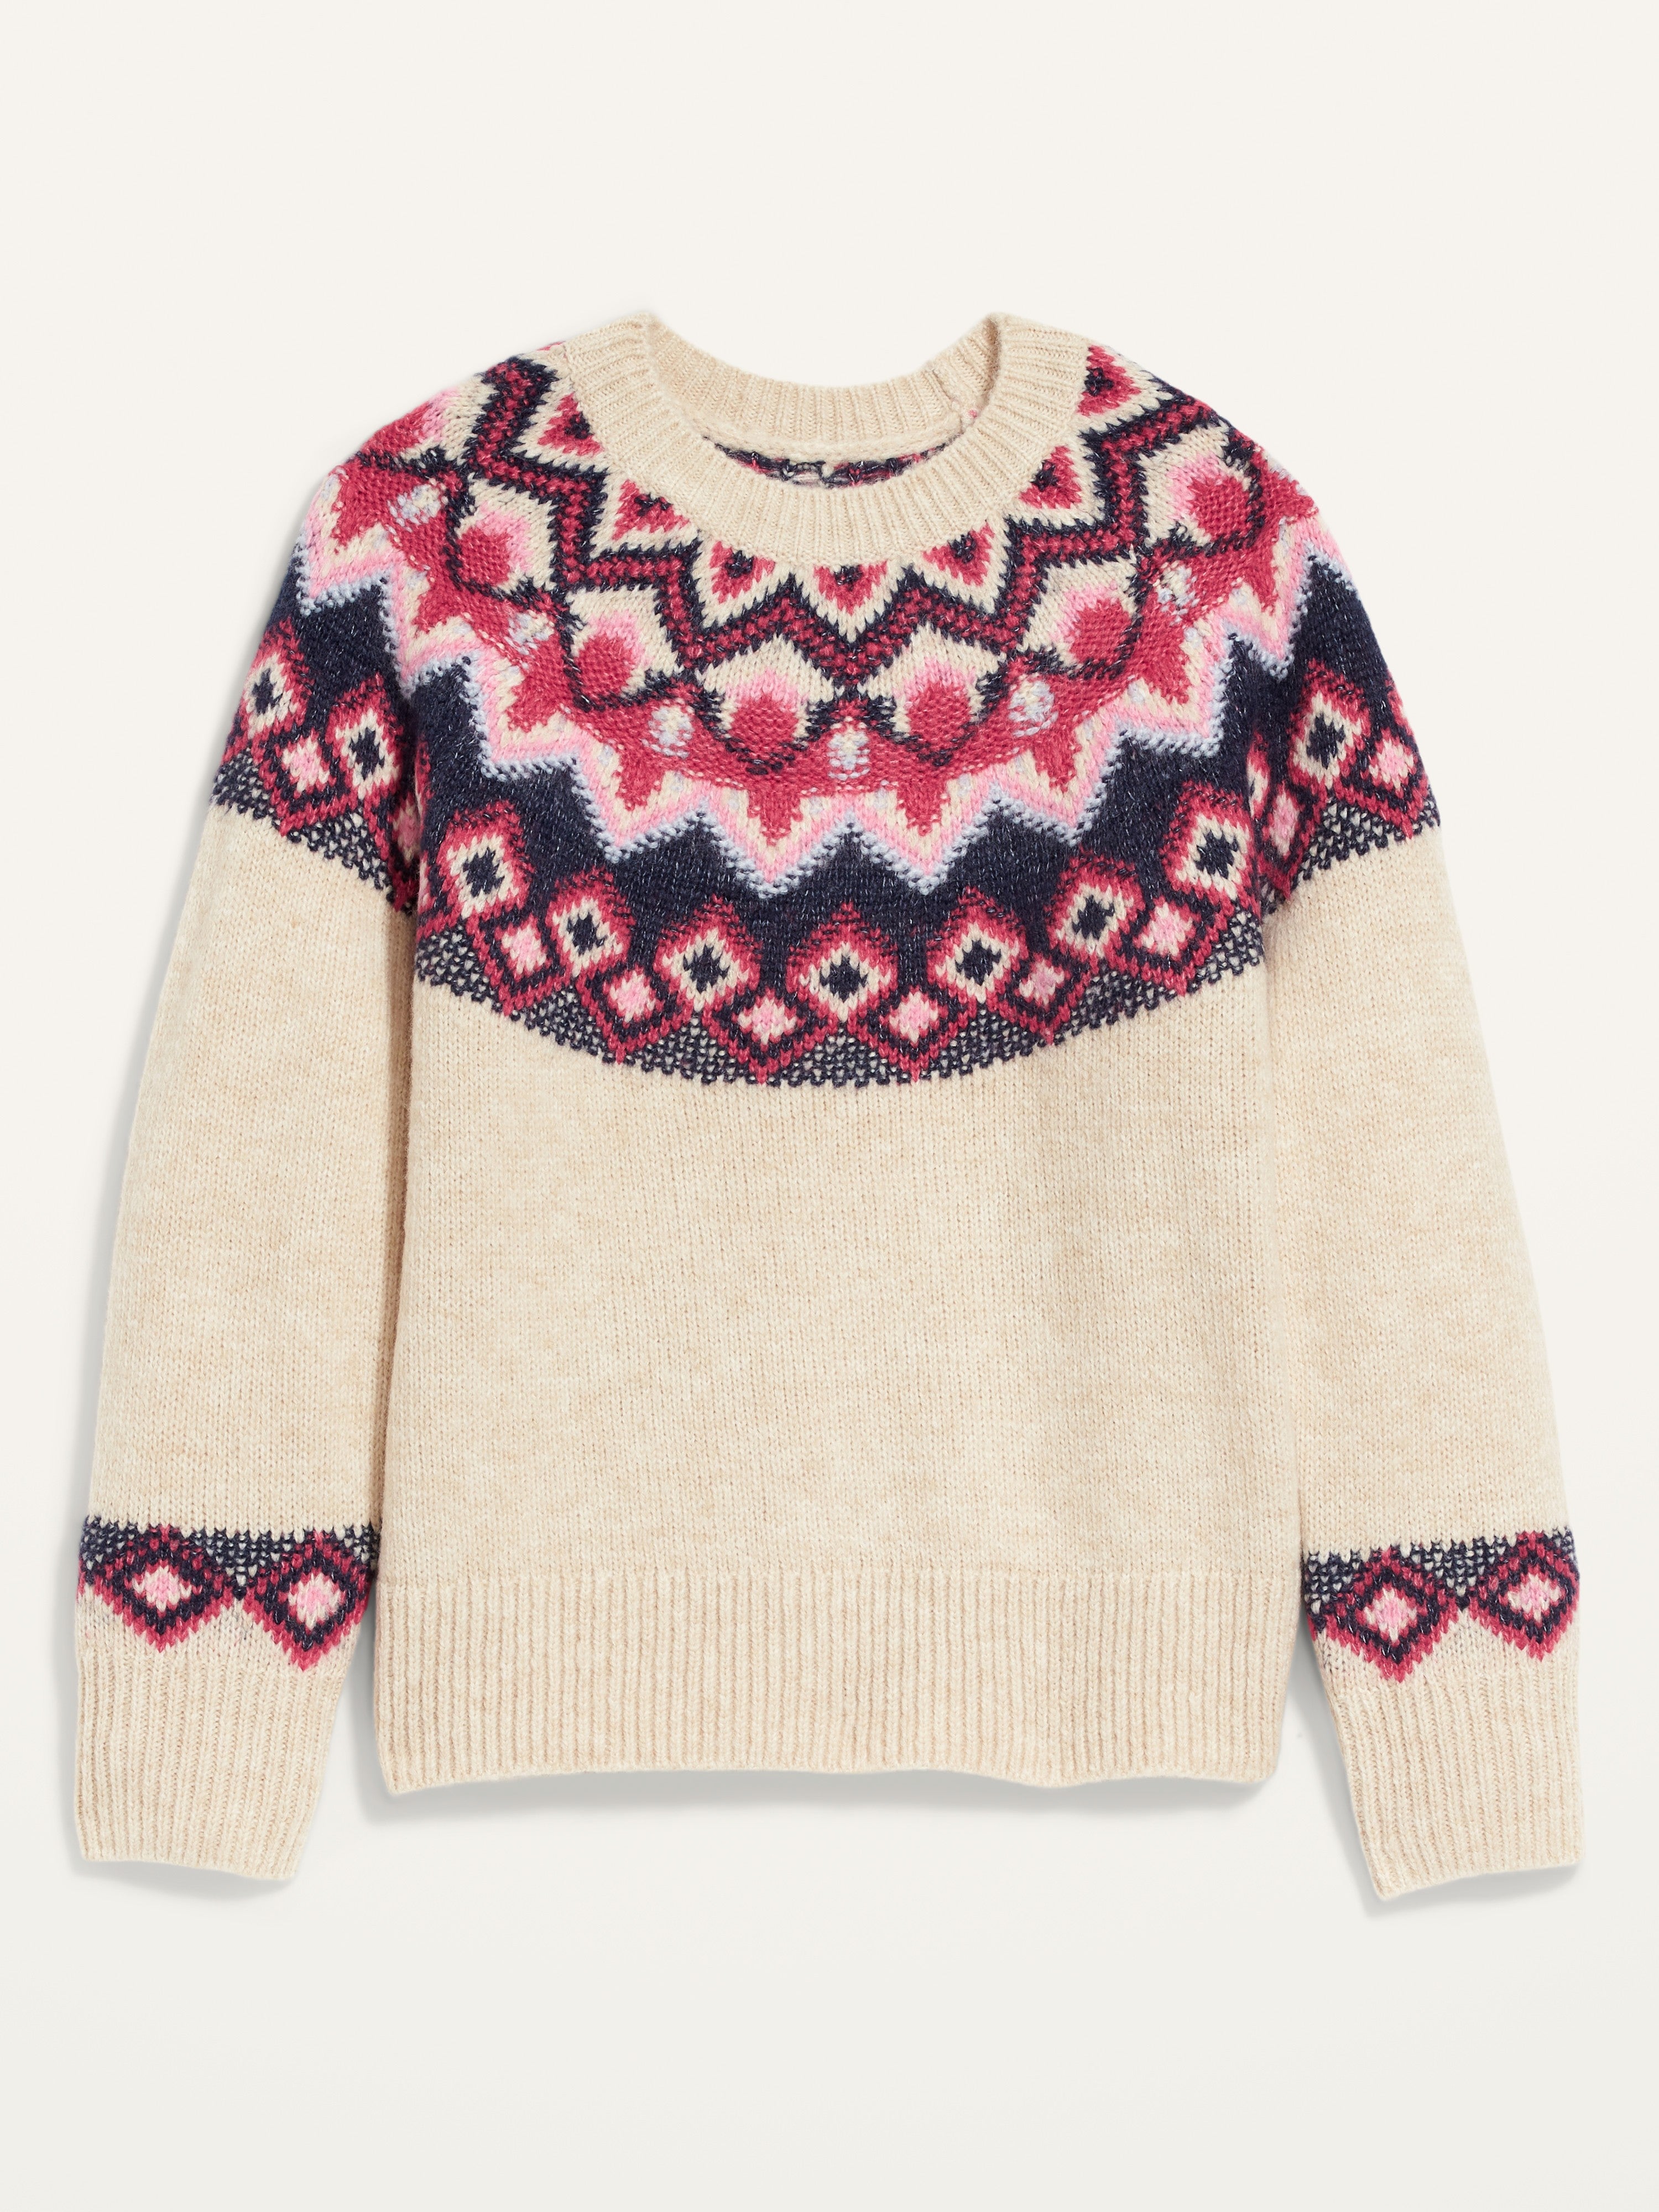 Women's patterned sweater